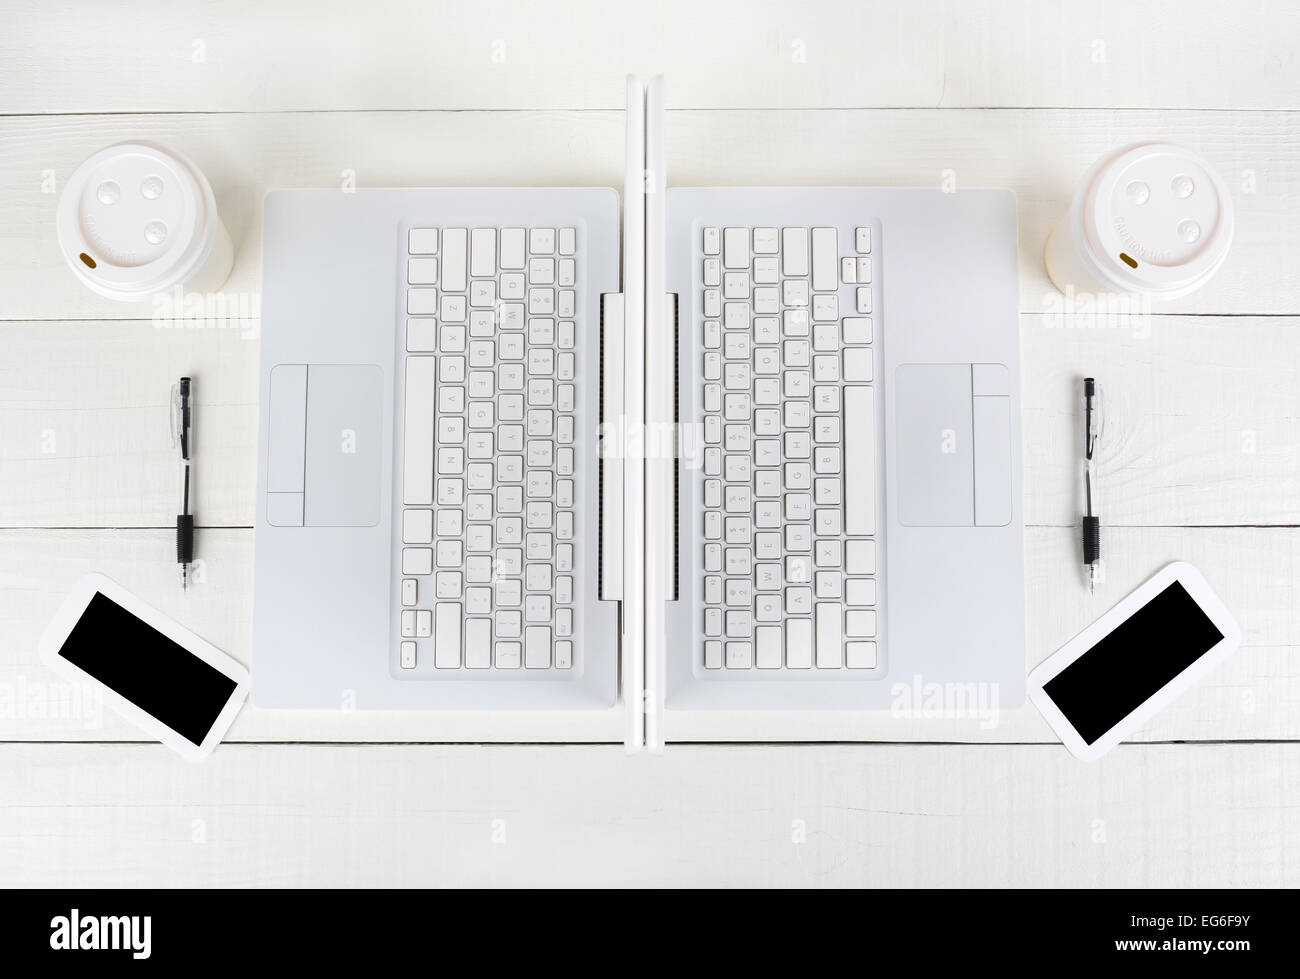 Alta angolazione del laptop di due stazioni di lavoro di back-to-back con quasi identici formati. Formato orizzontale su un bianco tavola di legno. Foto Stock